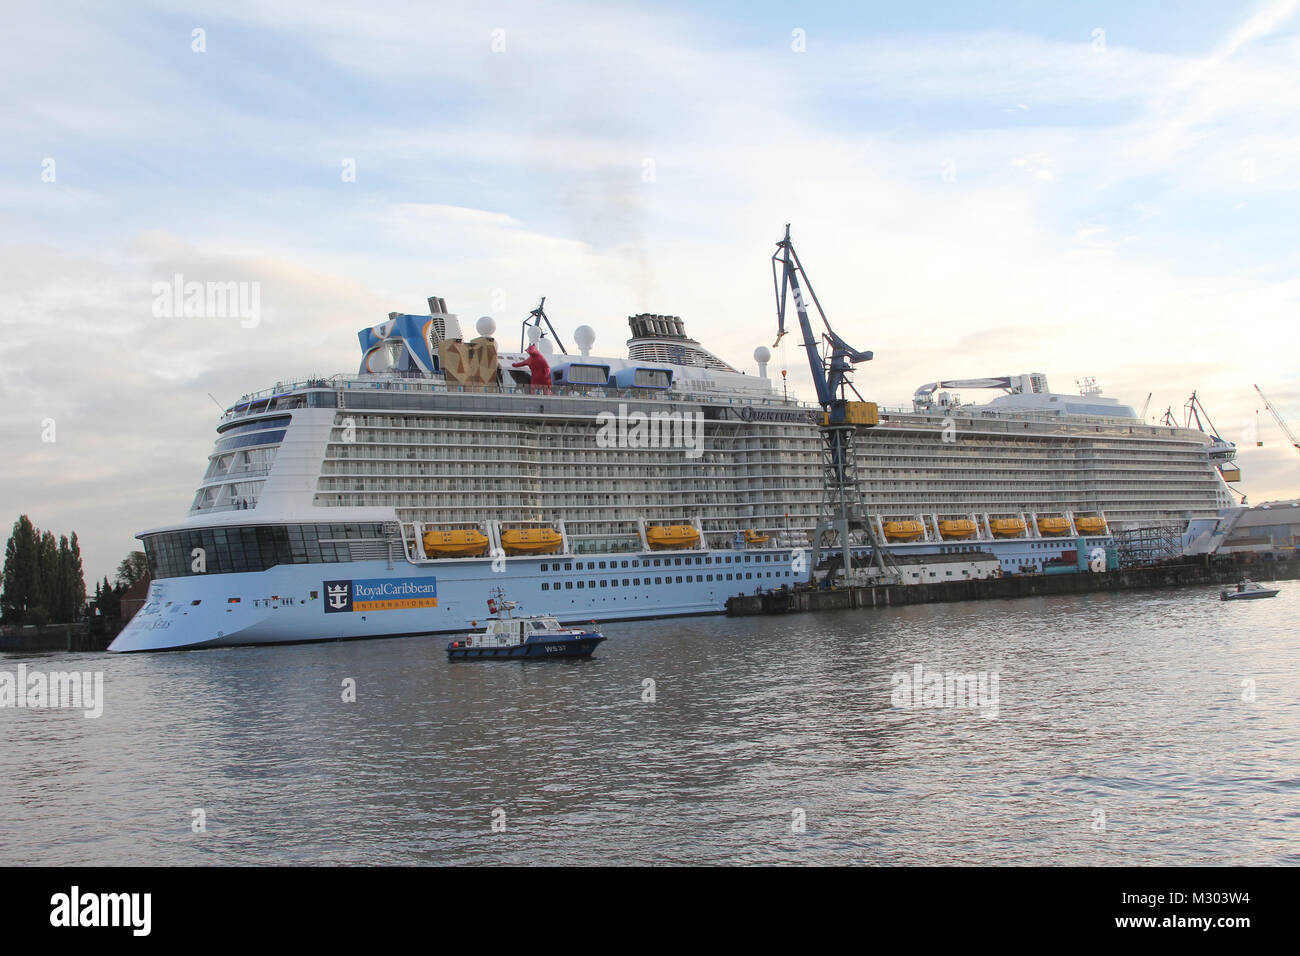 Das Kreuzfahrtschiff 'Quantum di mari' auf dem Weg zur Wartung ins Dock, Hafen Hamburg, 23.10.2014 Foto Stock